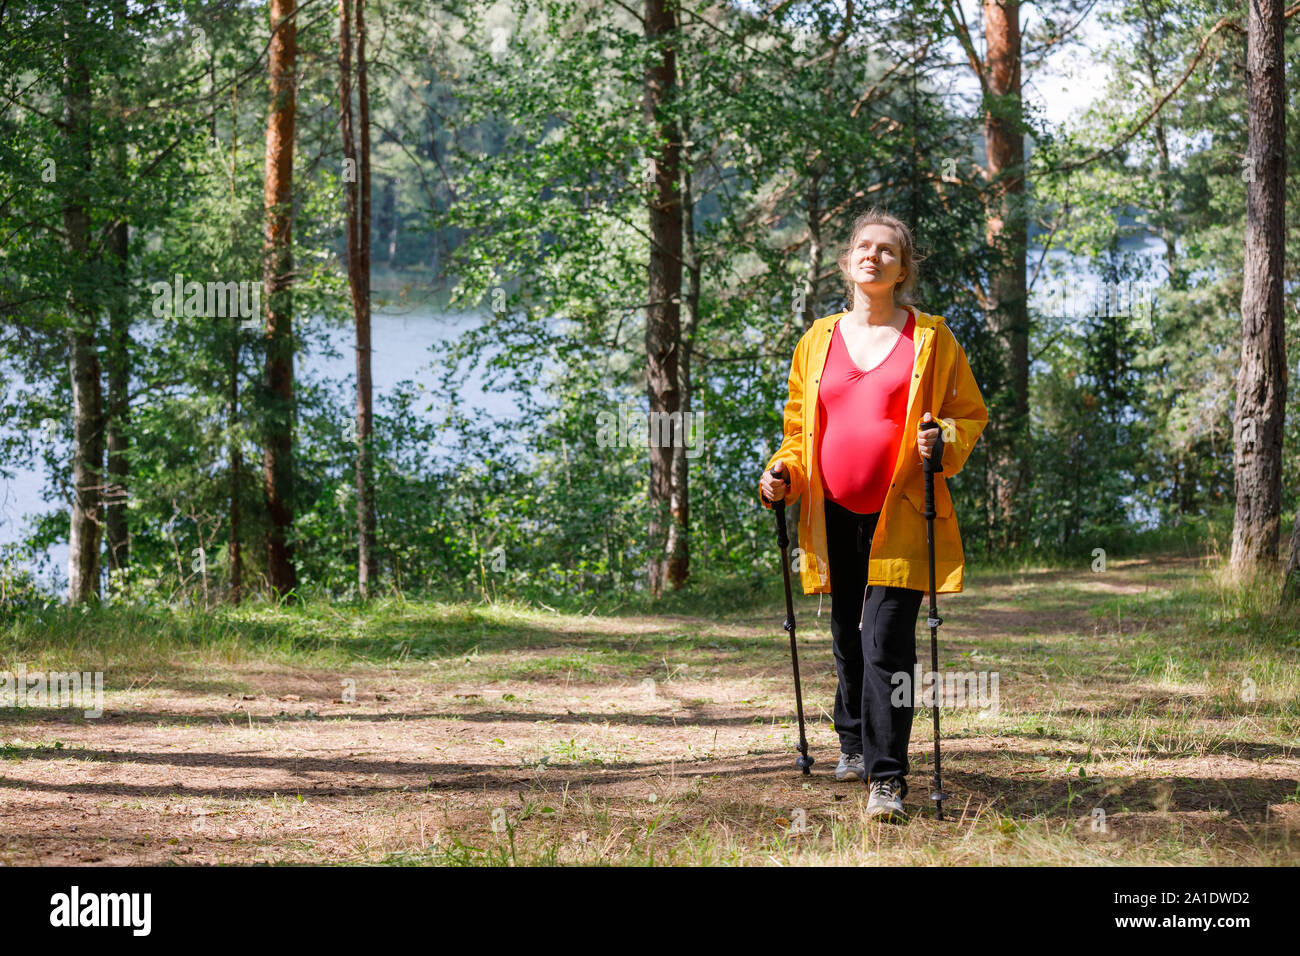 Young pregnant woman wearing raincoat marche à travers la forêt de l'été ensoleillé en utilisant des bâtons de marche appréciant la nature - Grossesse en santé concept de vie Banque D'Images